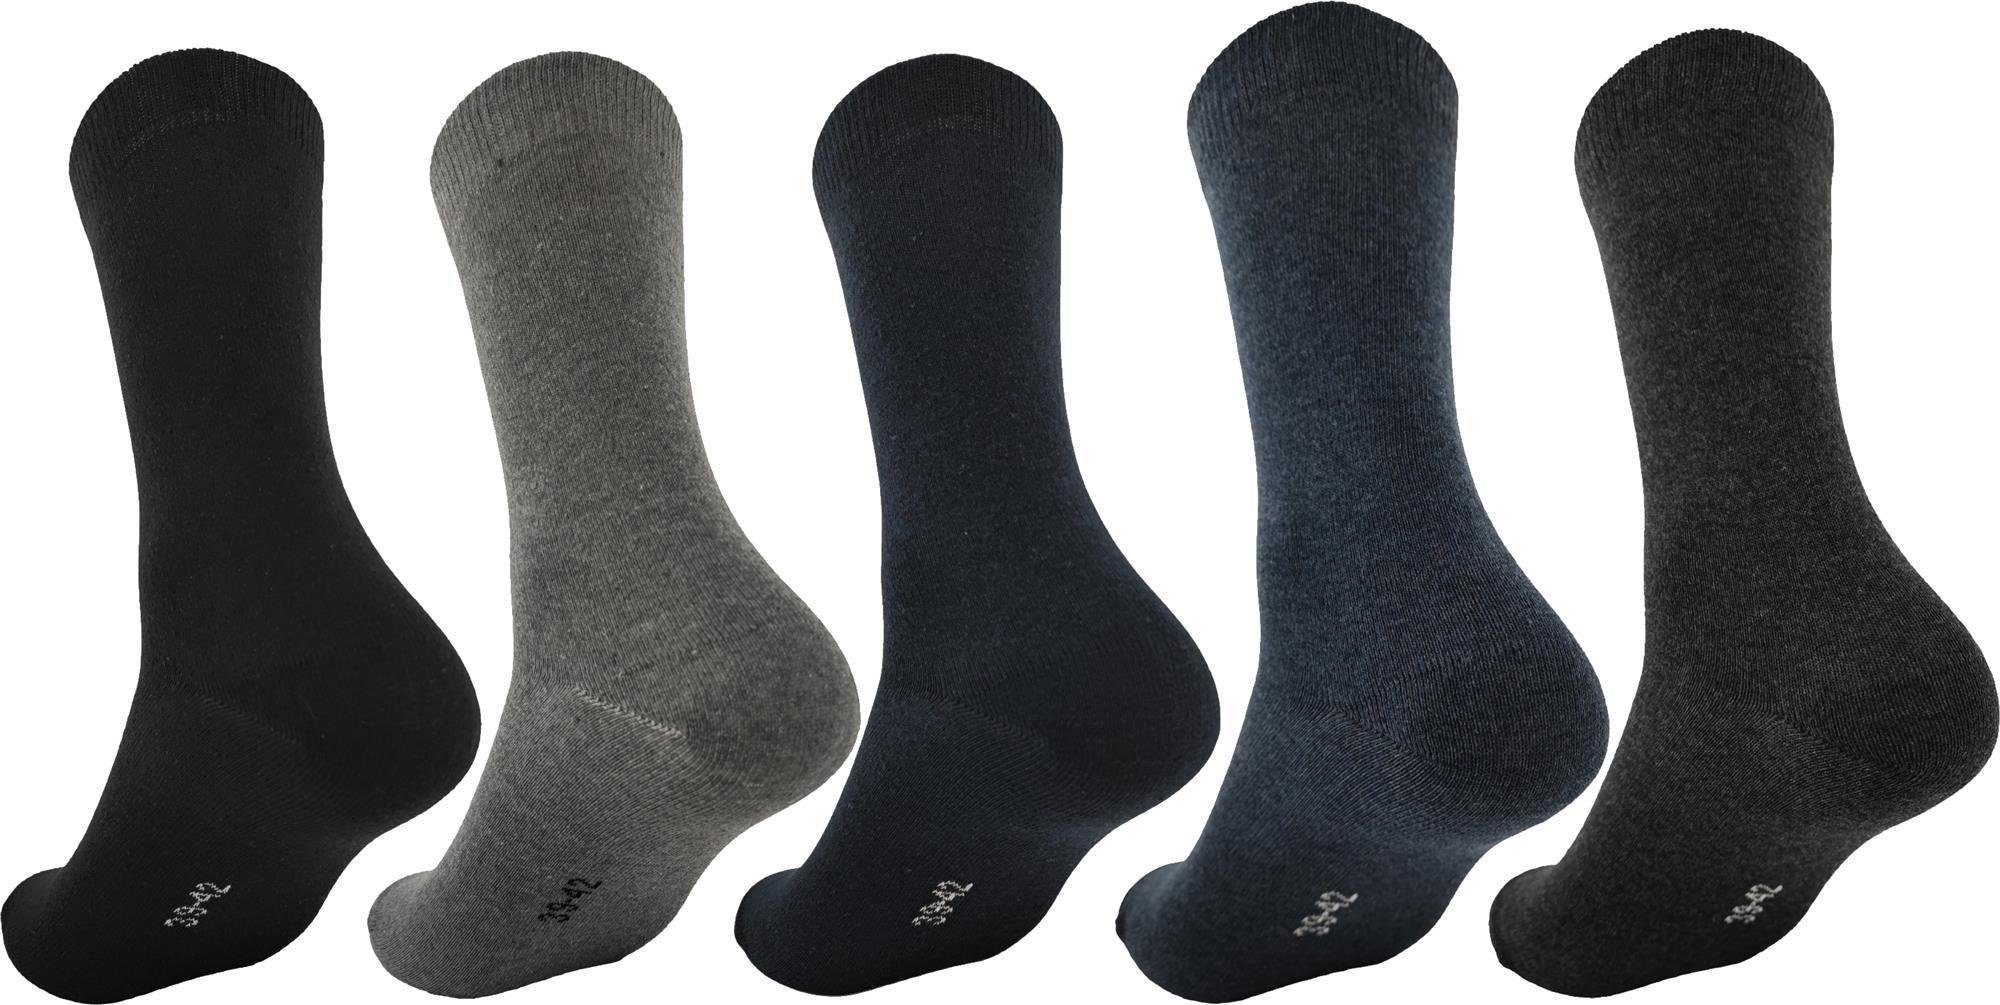 EloModa Basicsocken 5 Paar grau Socken Form; Anzug klassischer Gemischt, Herren (5-Paar) grafit, Business schwarz, Freizeit in